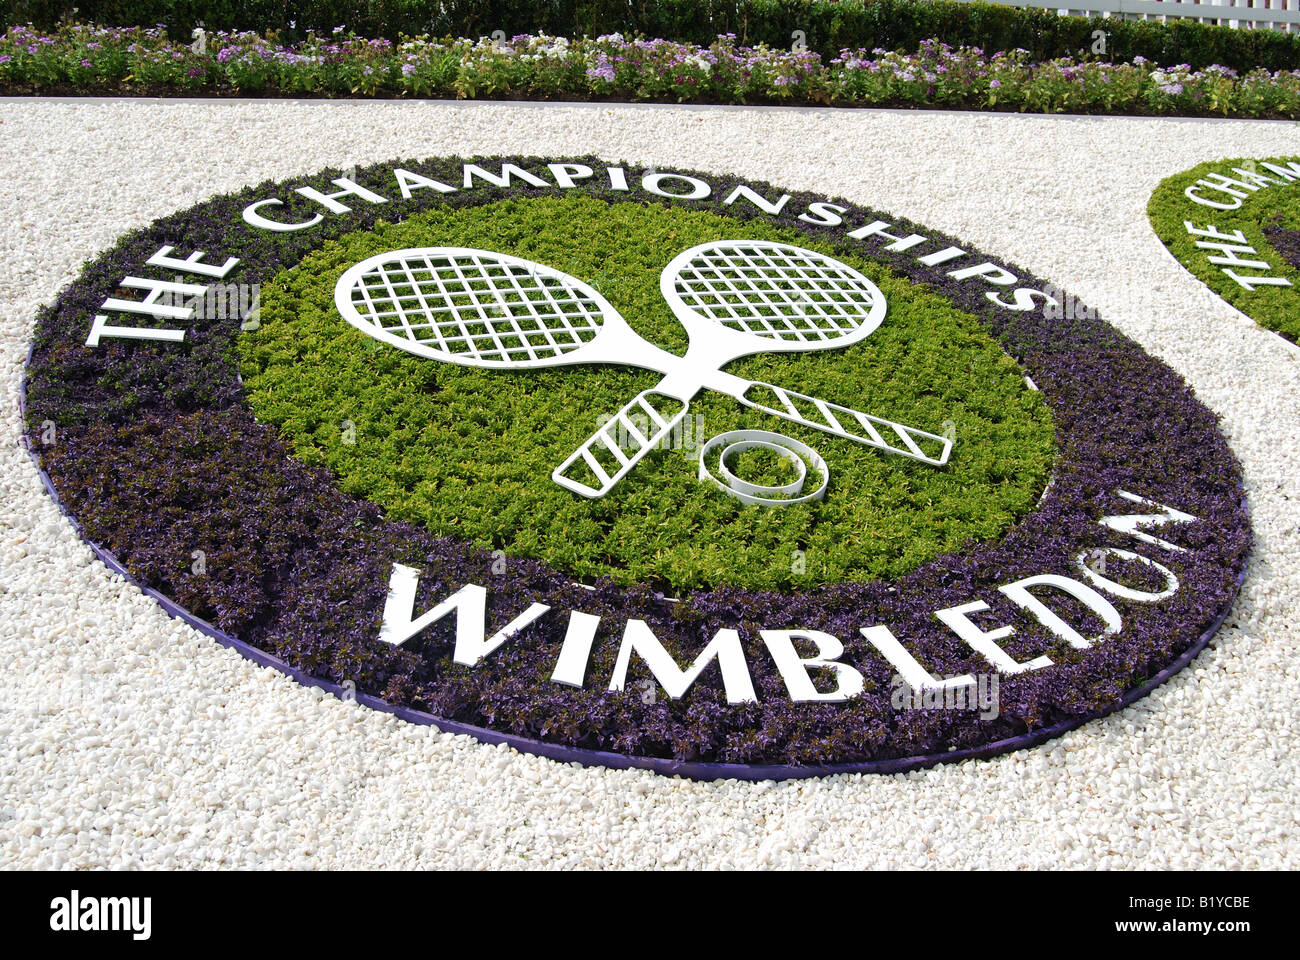 Logo Wimbledon sur Henman Hill, les Championnats, Wimbledon, Merton Borough, Greater London, Angleterre, Royaume-Uni Banque D'Images